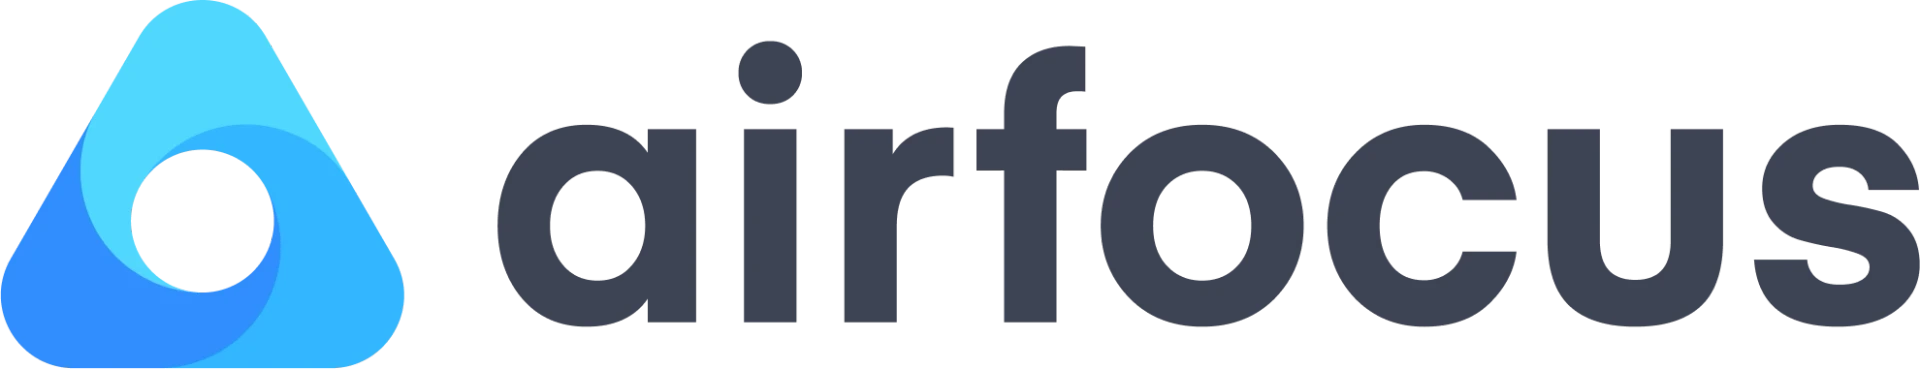 airfocus-logo